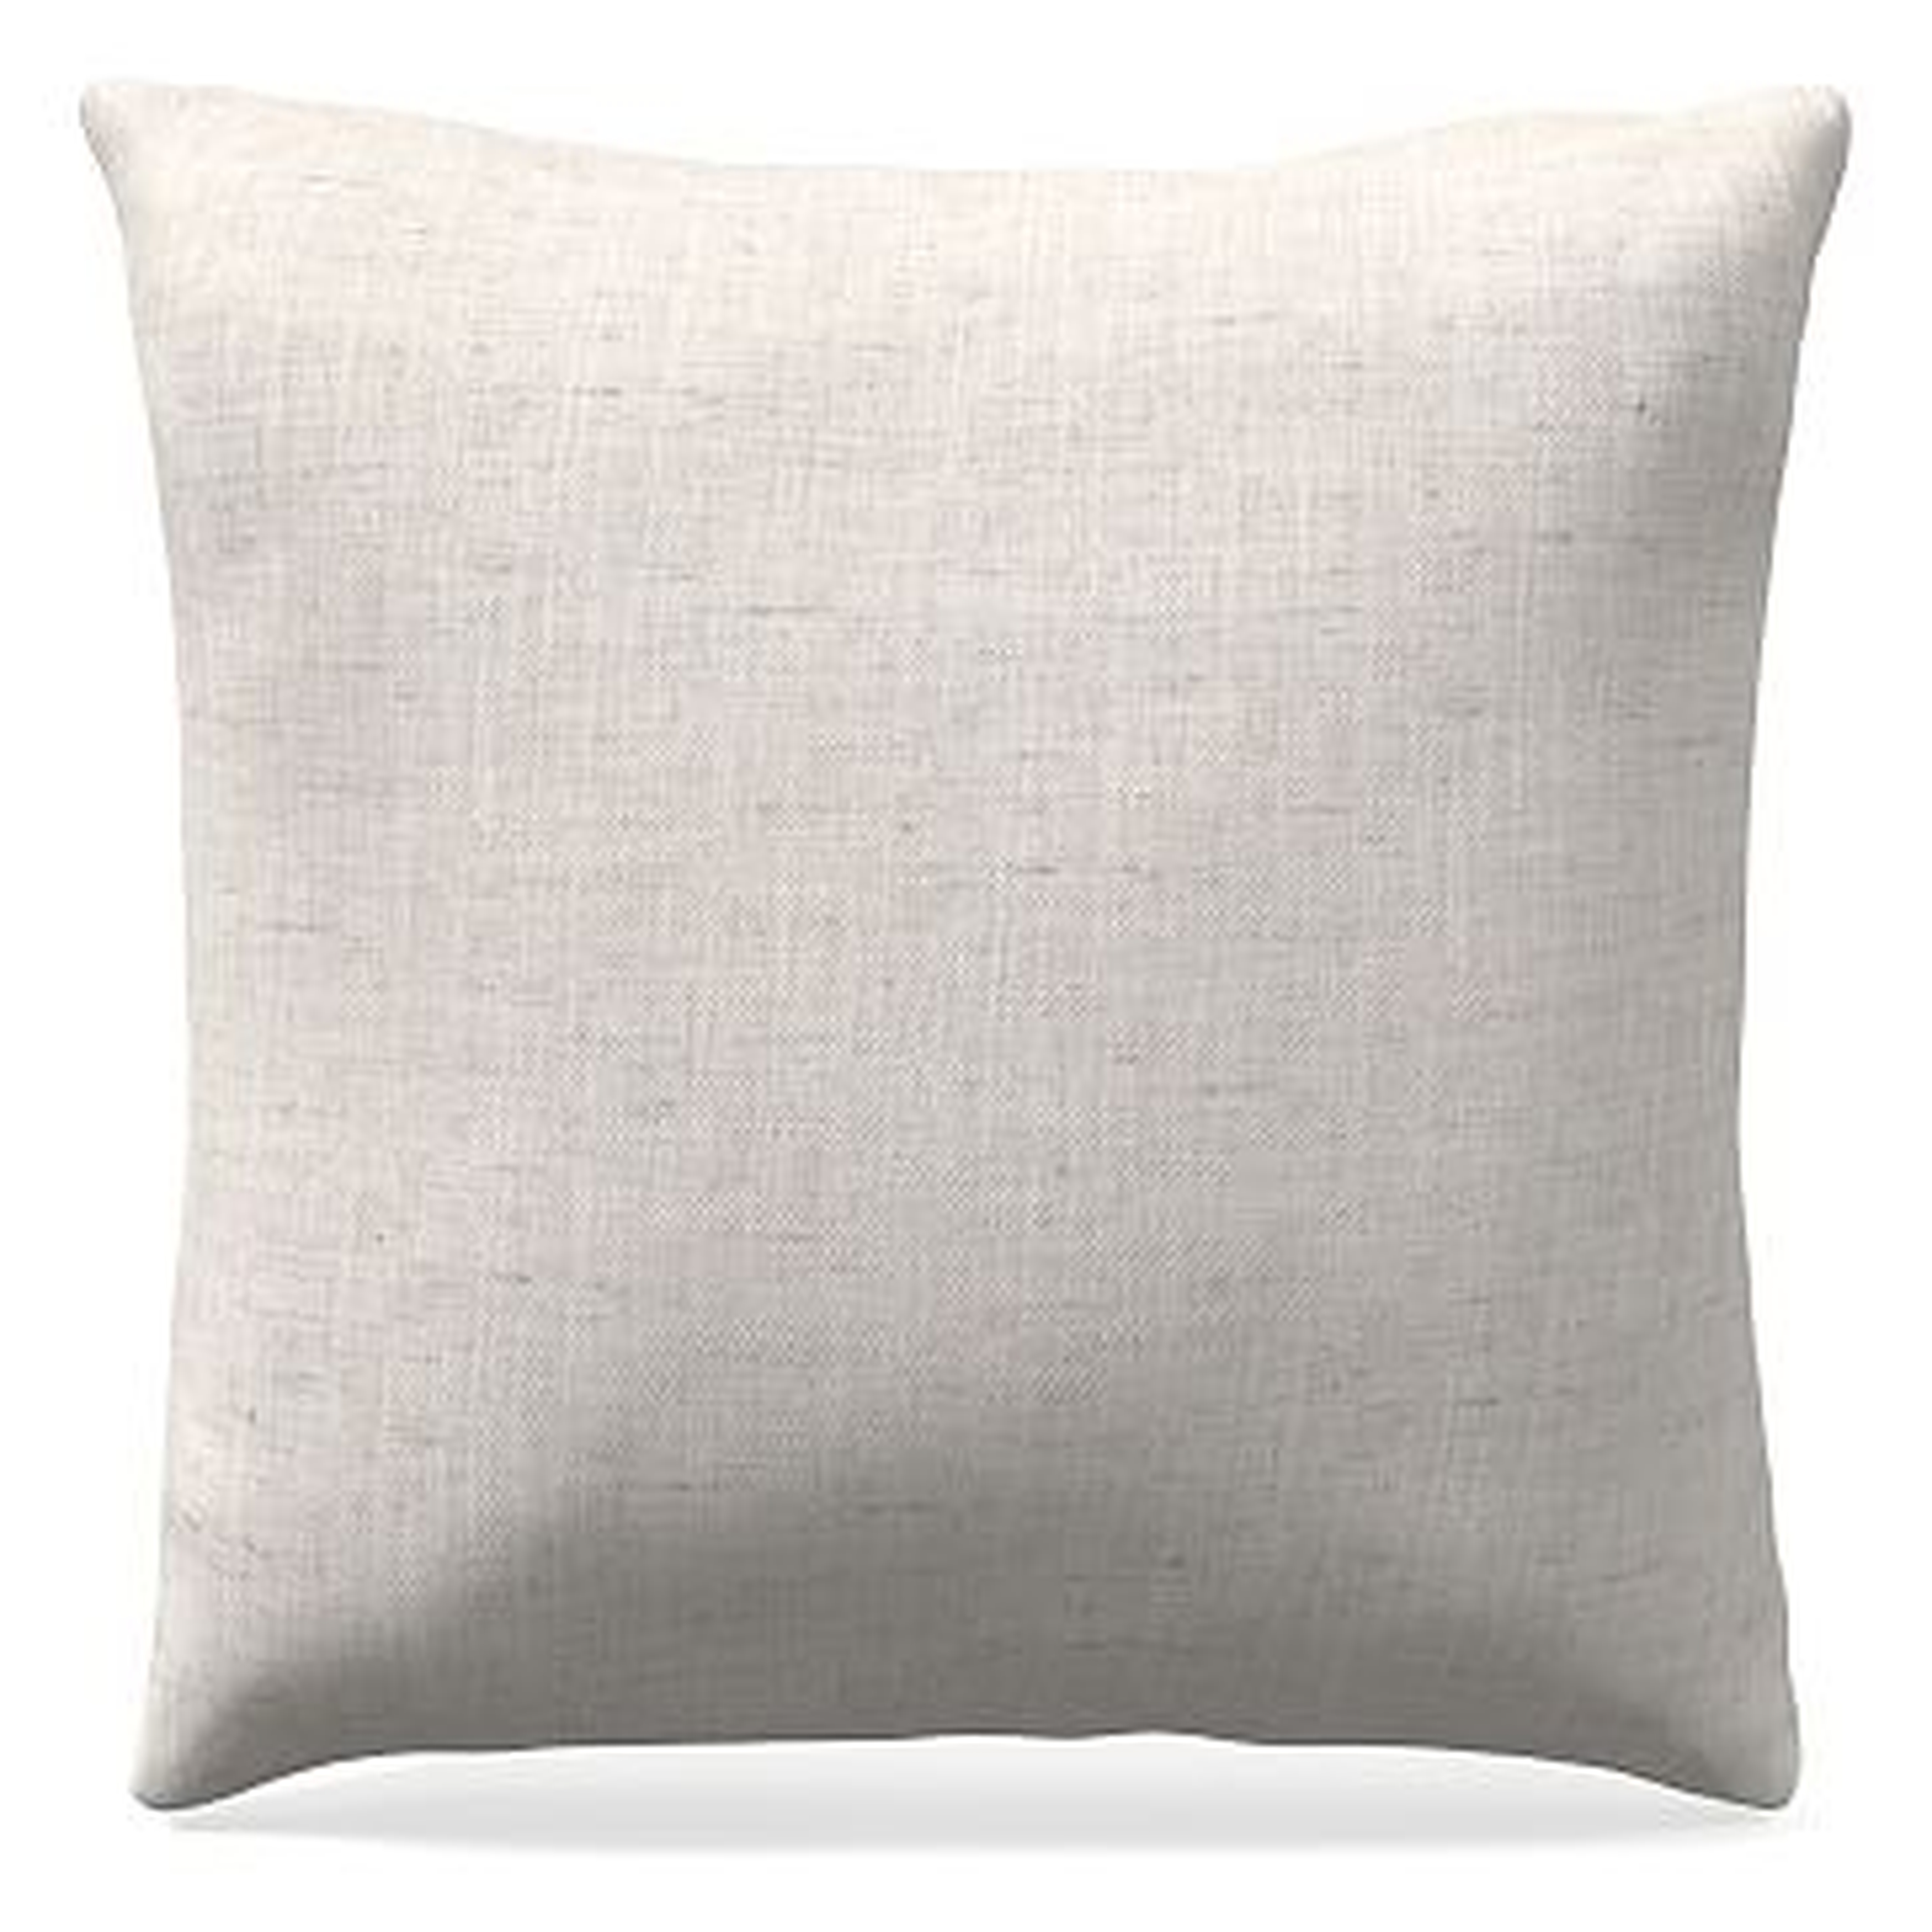 20"x 20" Welt Seam Pillow, N/A, Performance Coastal Linen, White, N/A - West Elm